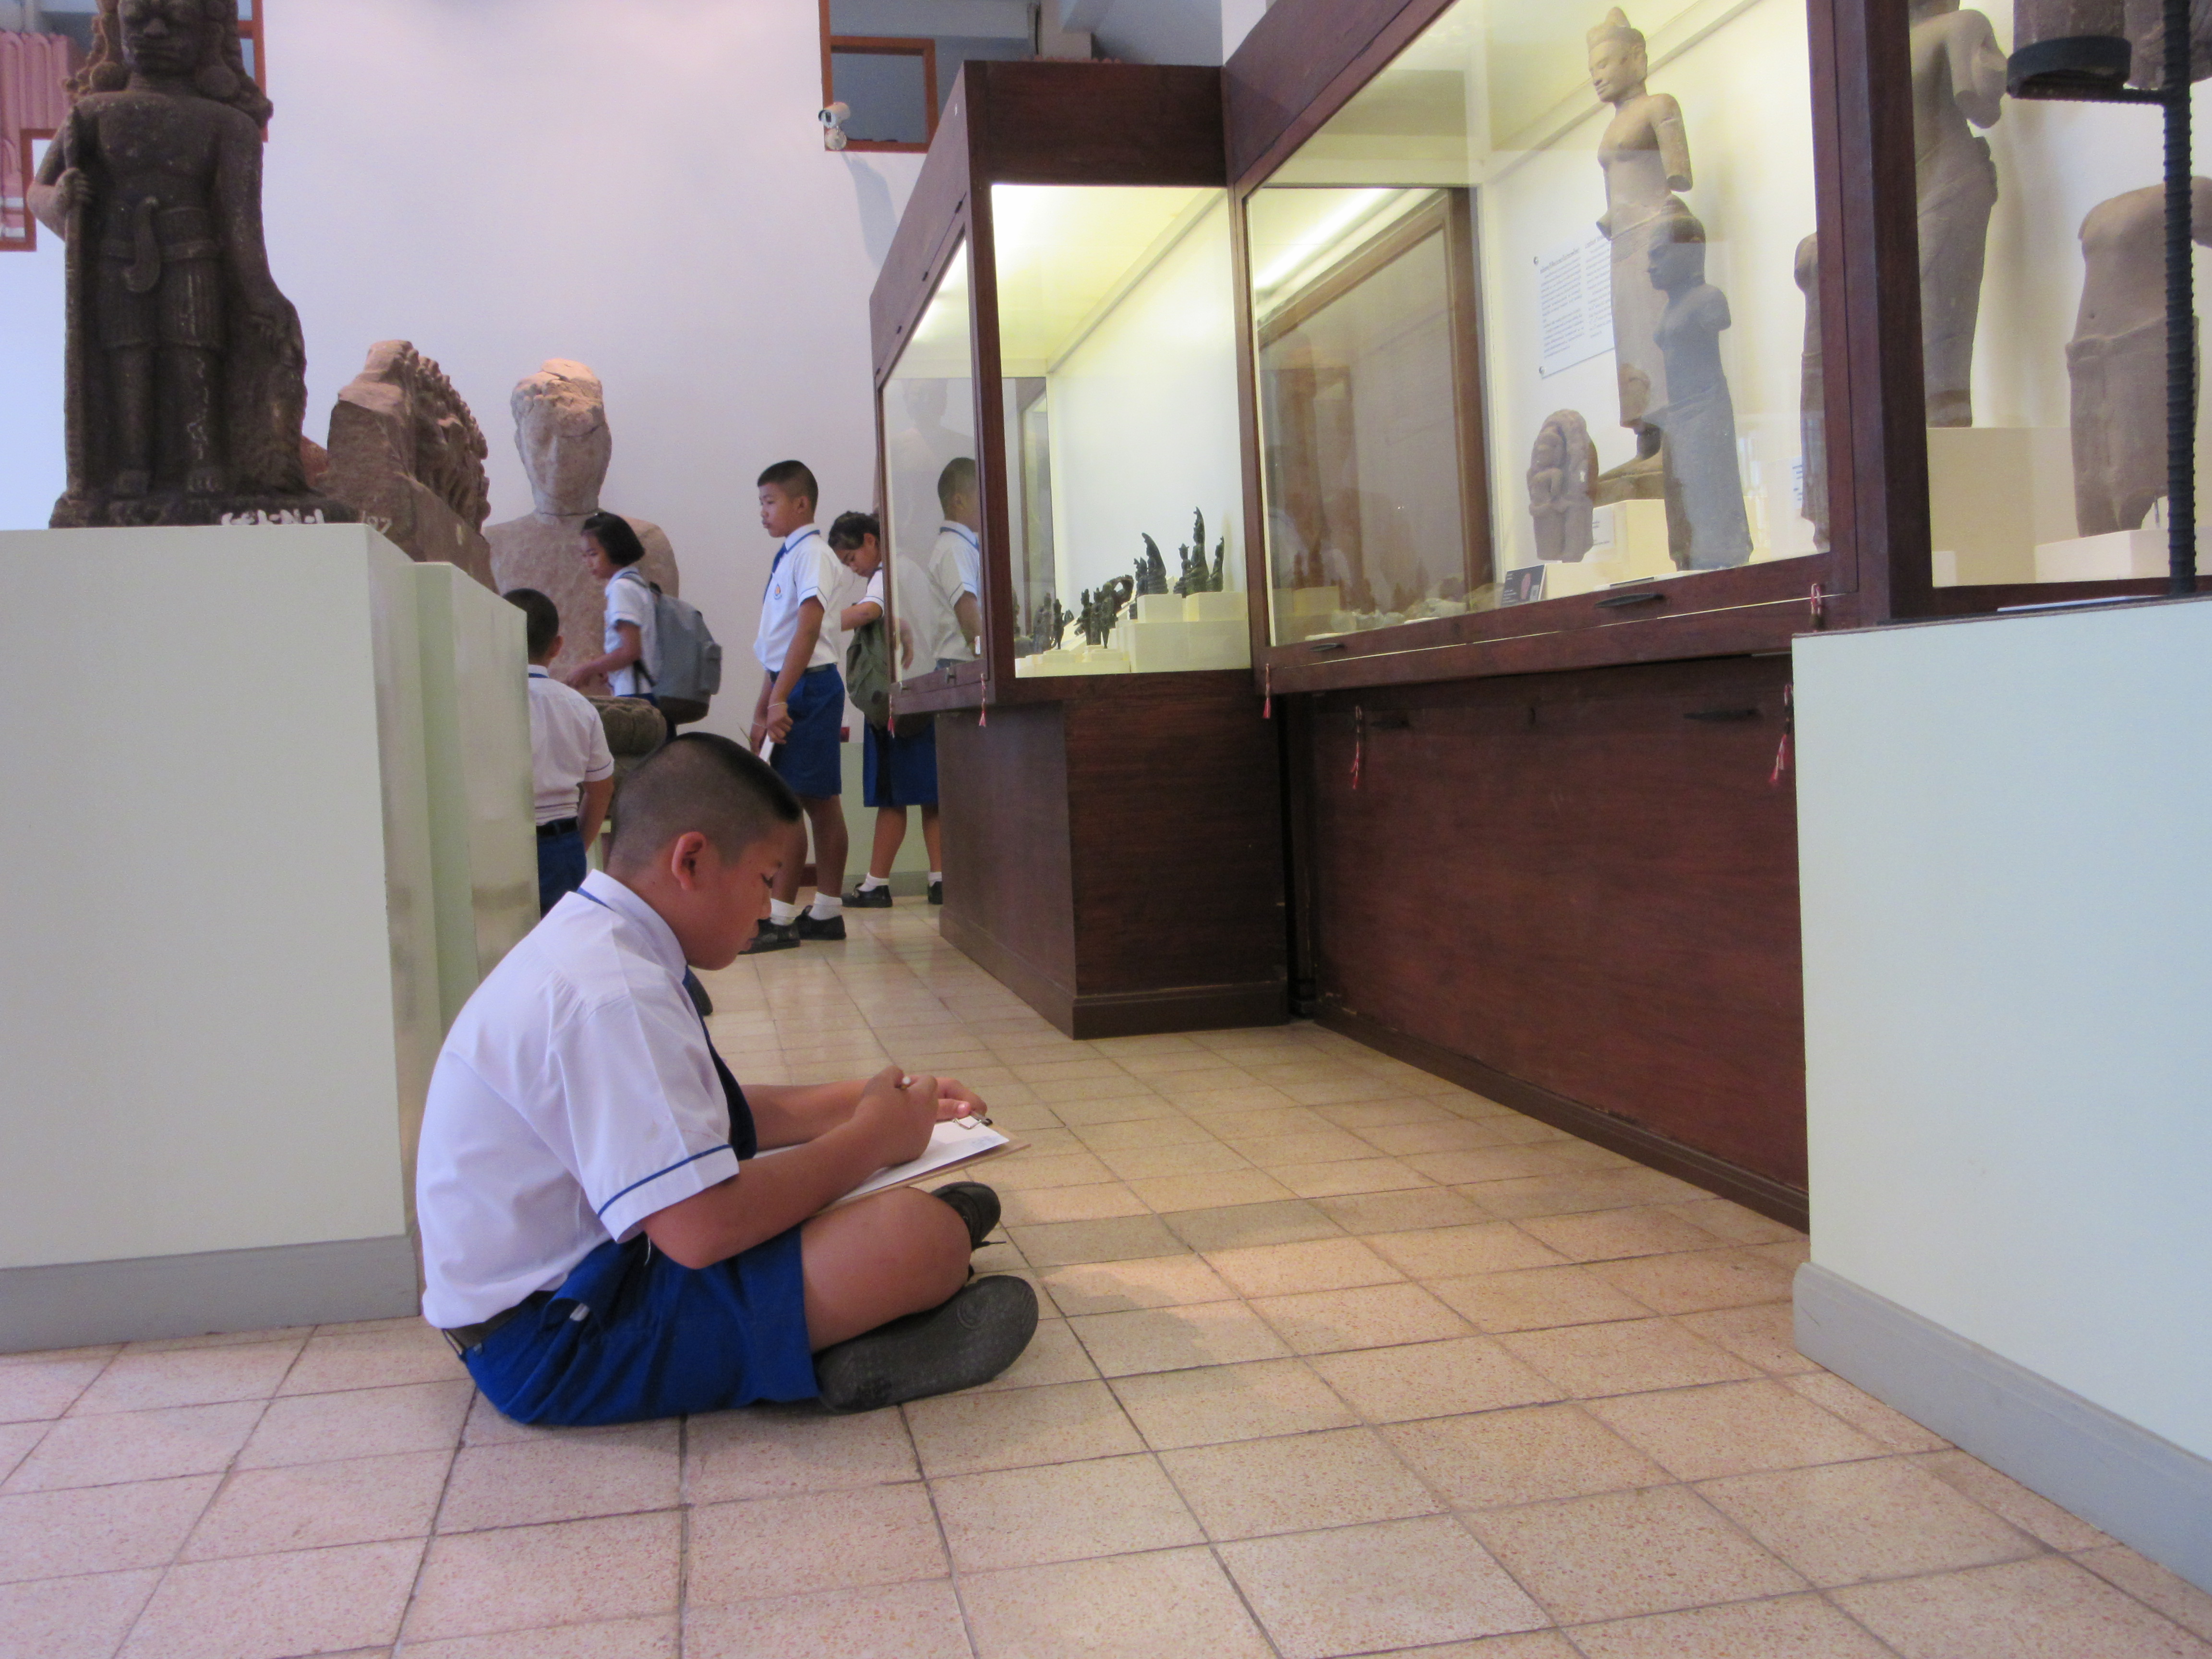 กิจกรรมวันเด็กแห่งชาติ ประจำปี พ.ศ. 2562 พิพิธภัณฑสถานแห่งชาติ มหาวีรวงศ์